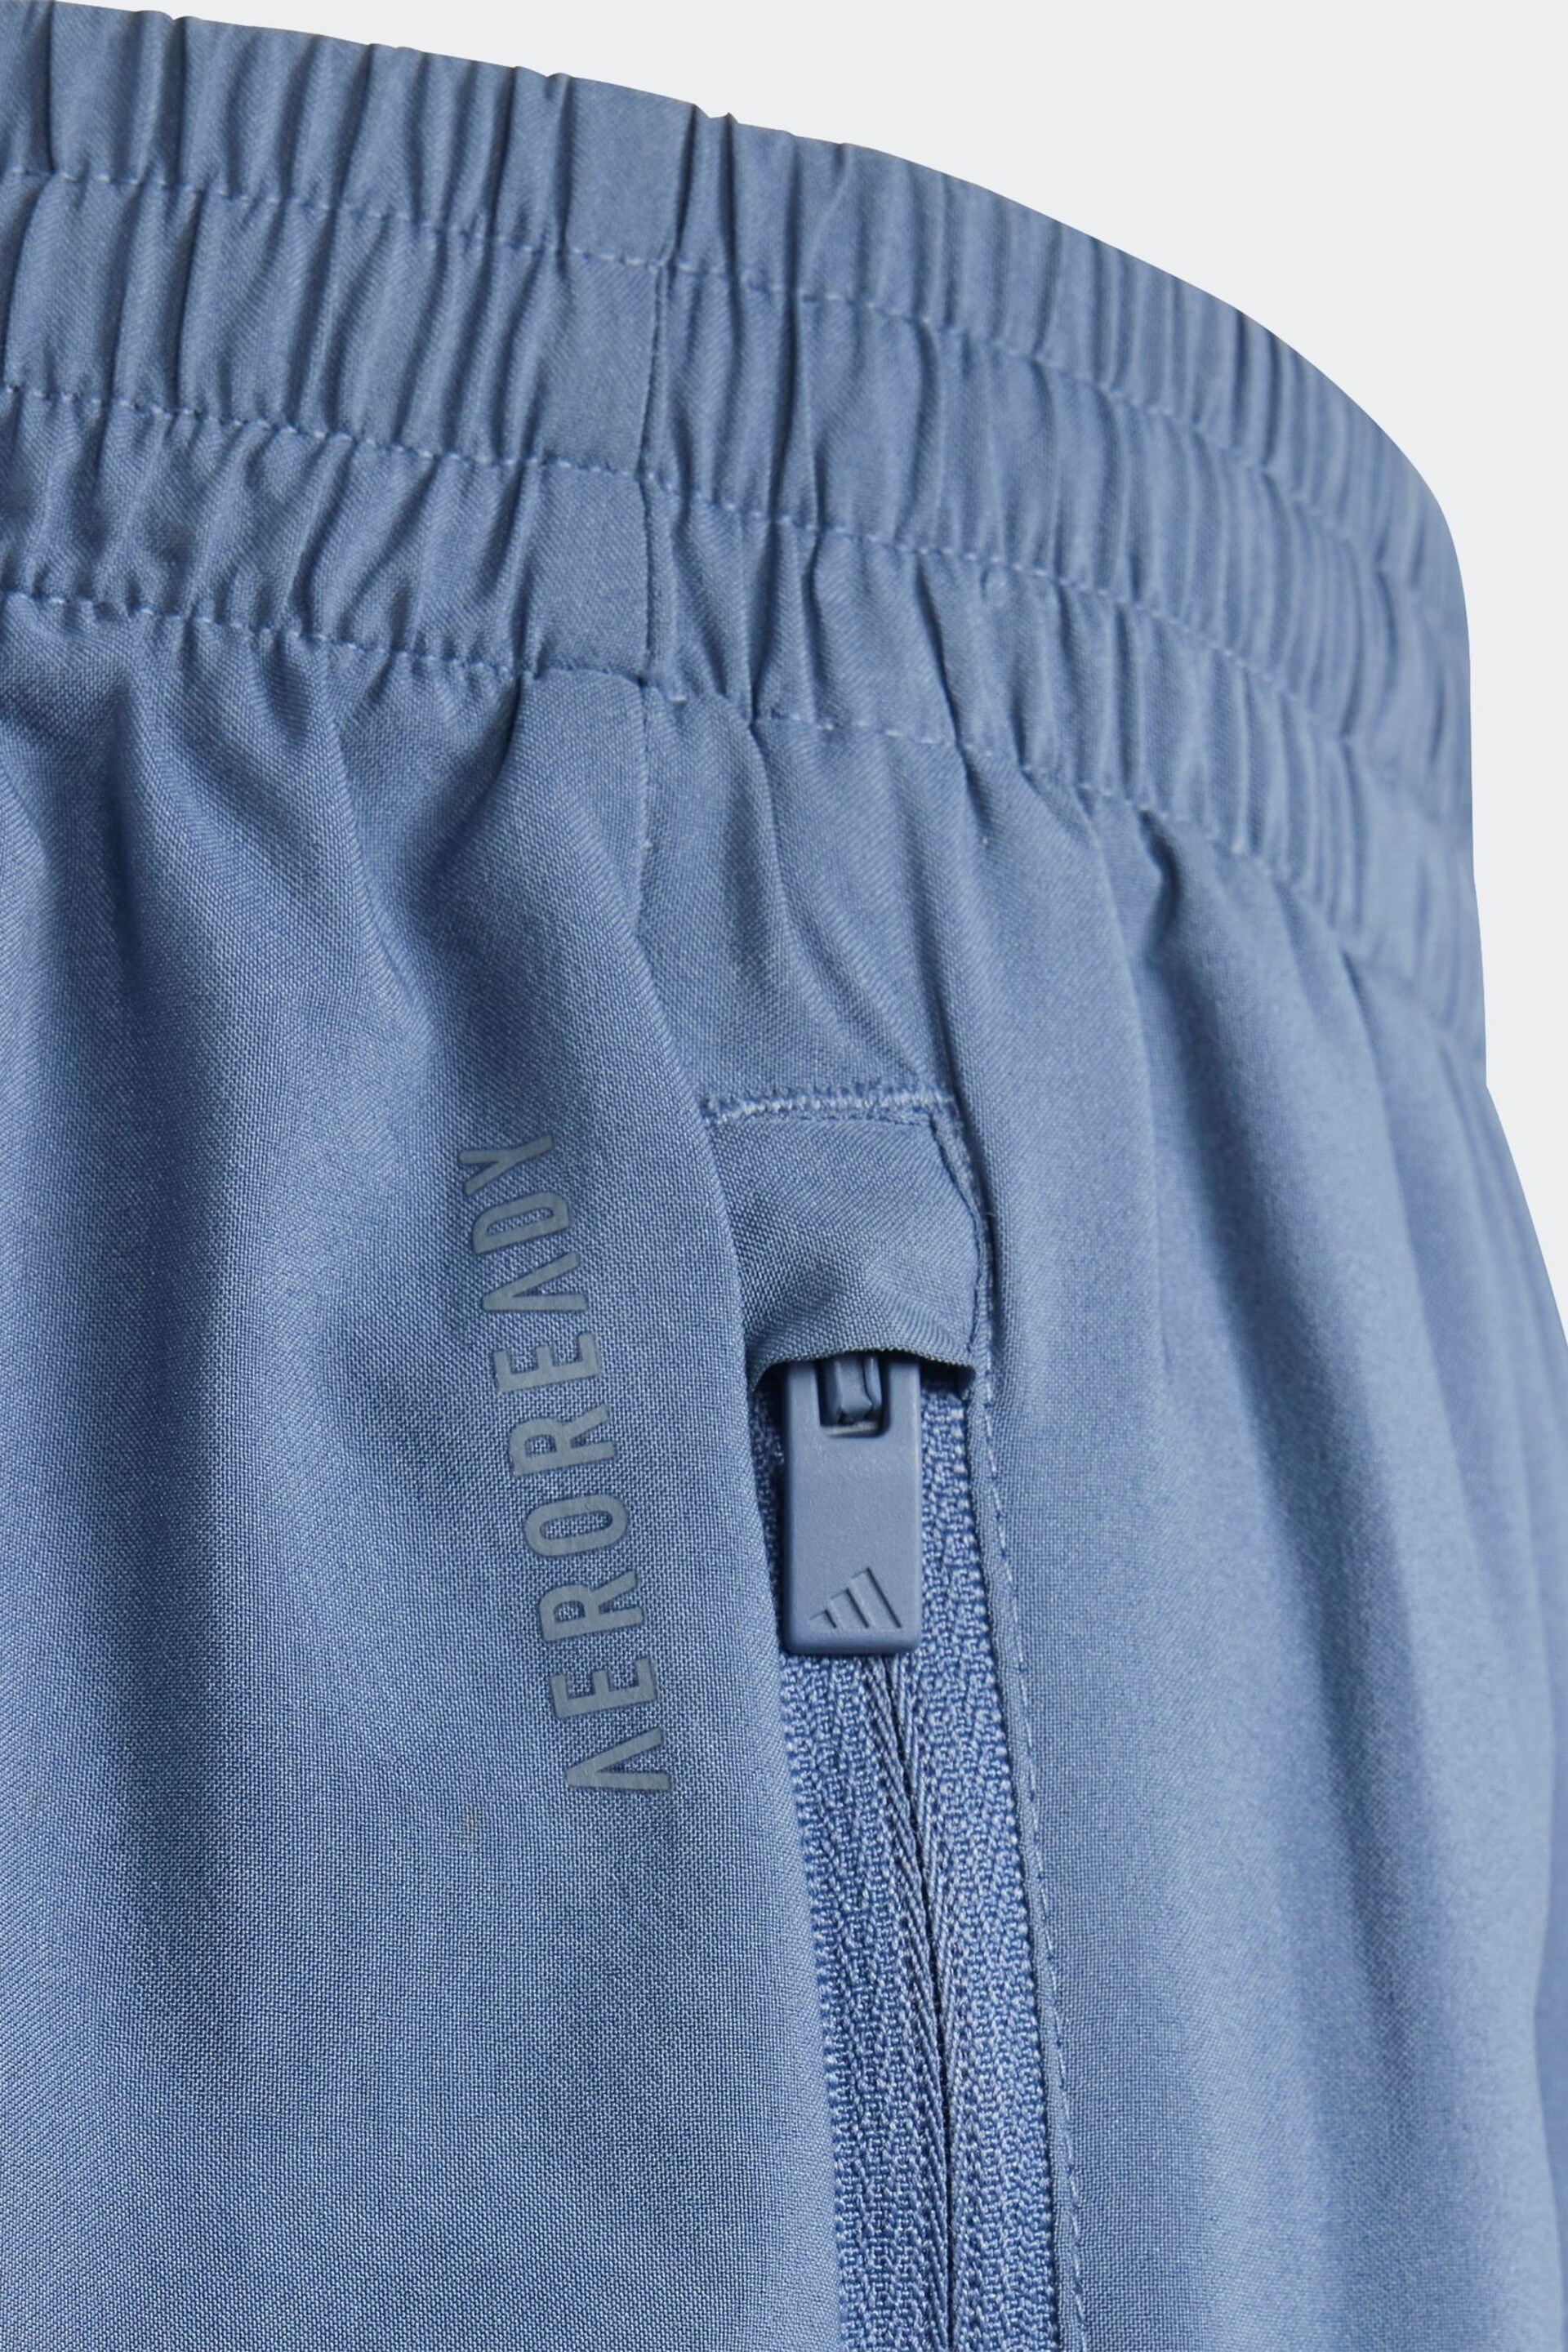 adidas Blue Shorts - Image 5 of 6